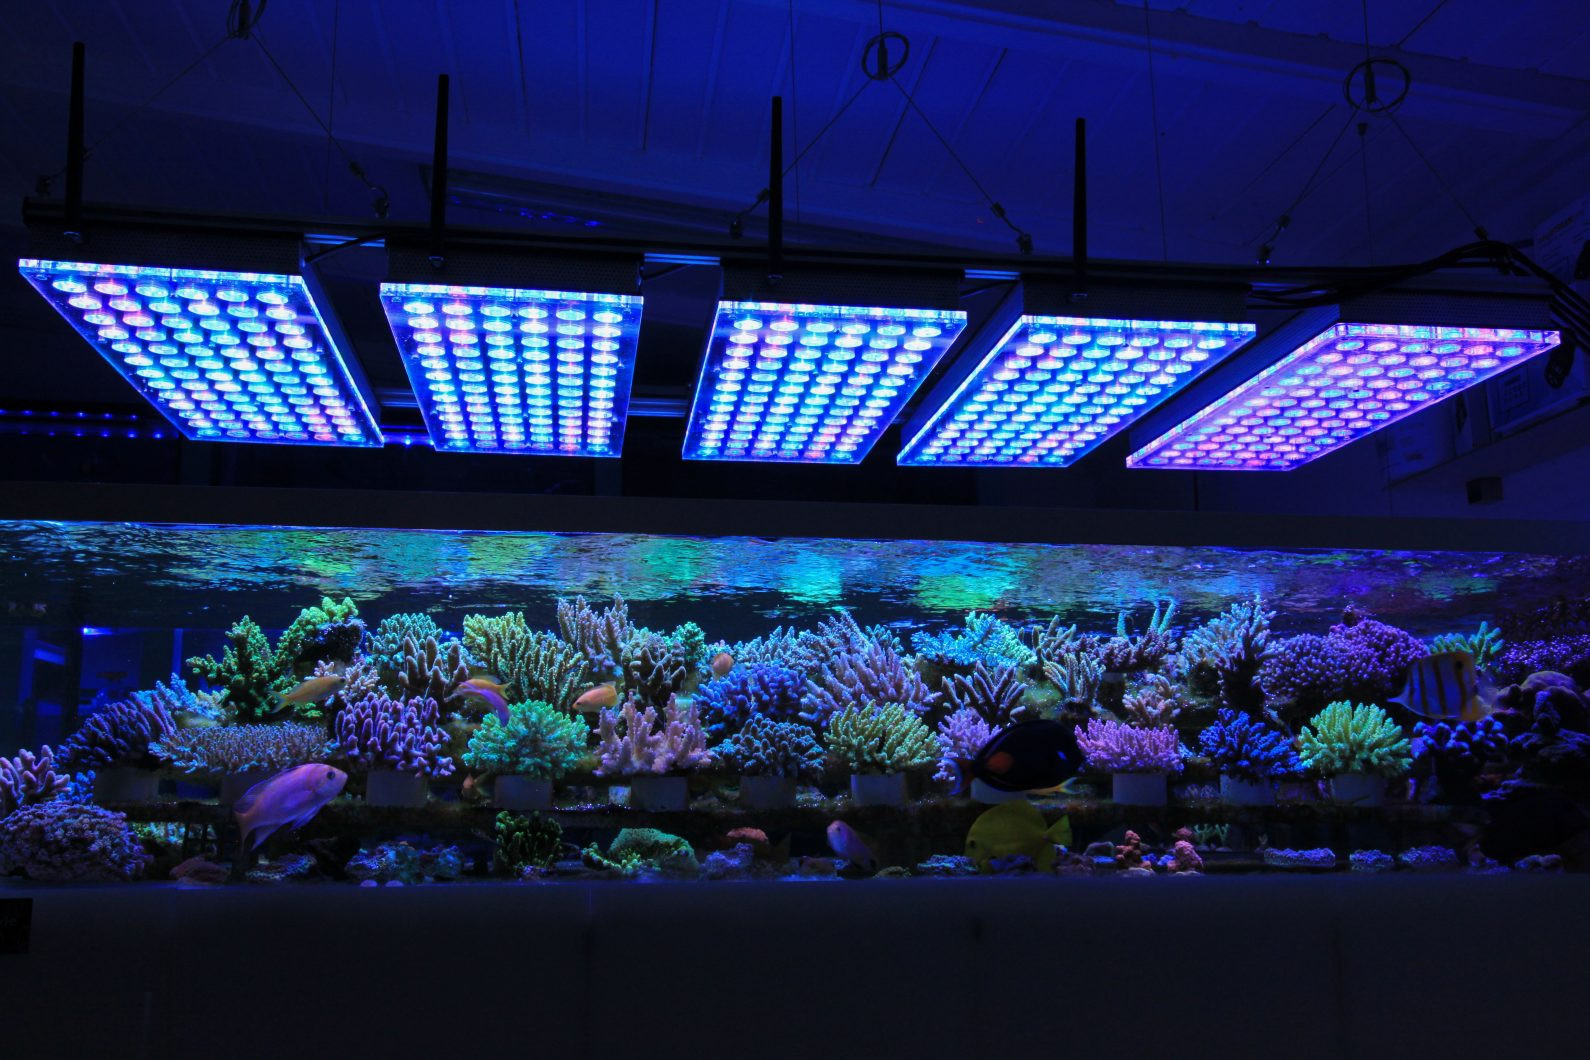 Best ideas about Led Aquarium Light
. Save or Pin Aquarium LED Lighting s Reef and Planted Aquarium Now.